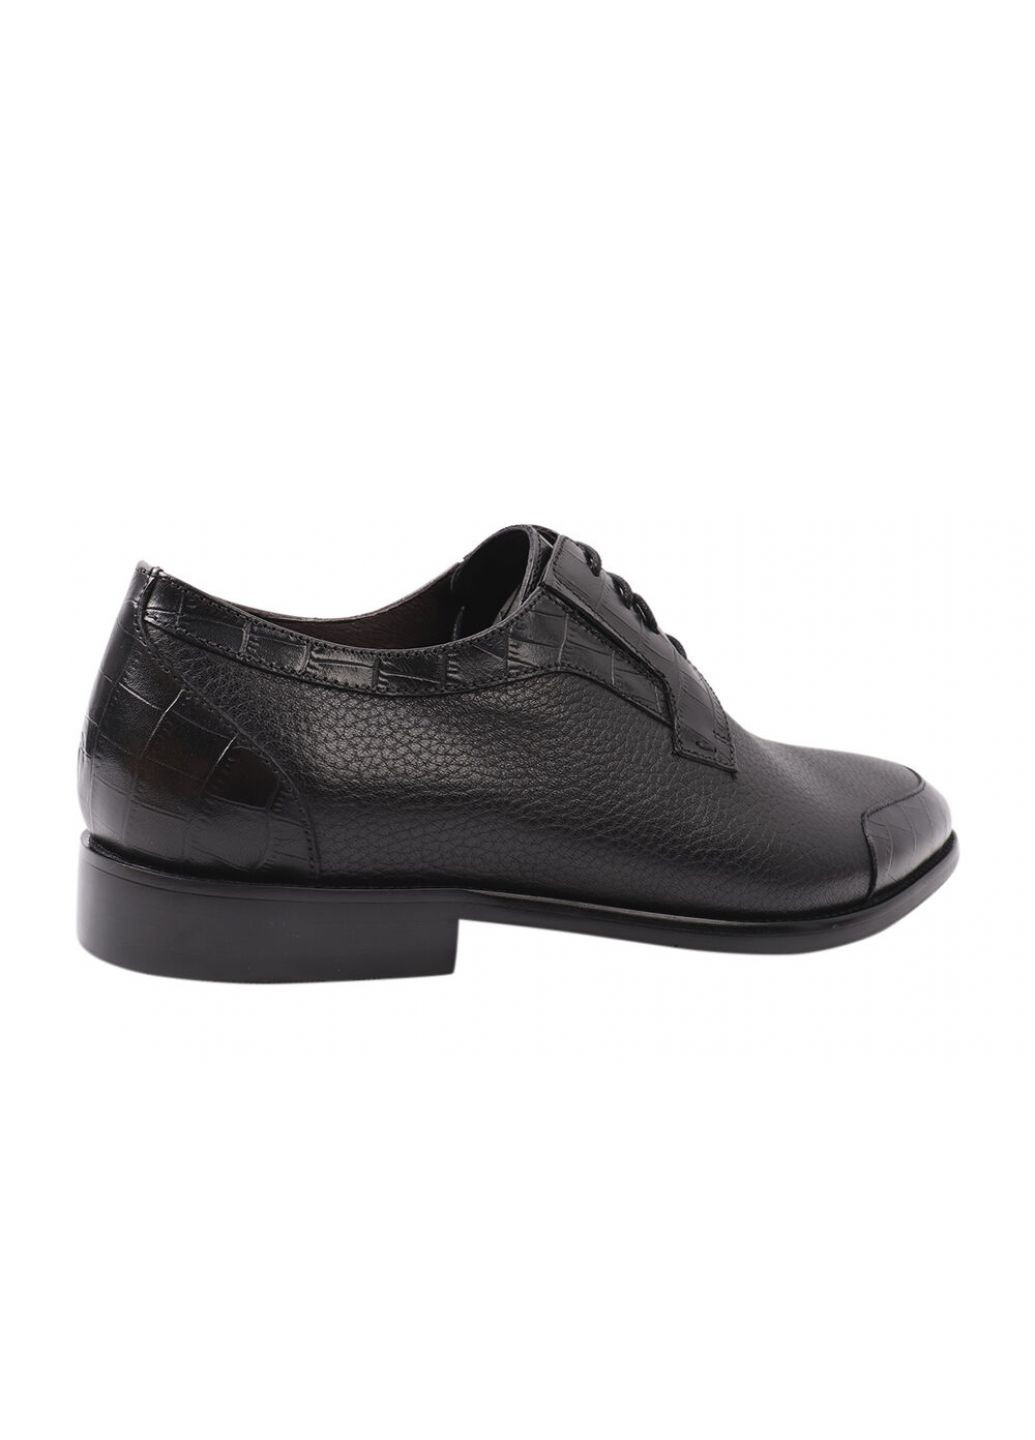 Туфлі чоловічі з натуральної шкіри, на низькому ходу, колір чорний, Lido Marinozi Lido Marinozzi 216-21dt (257437819)